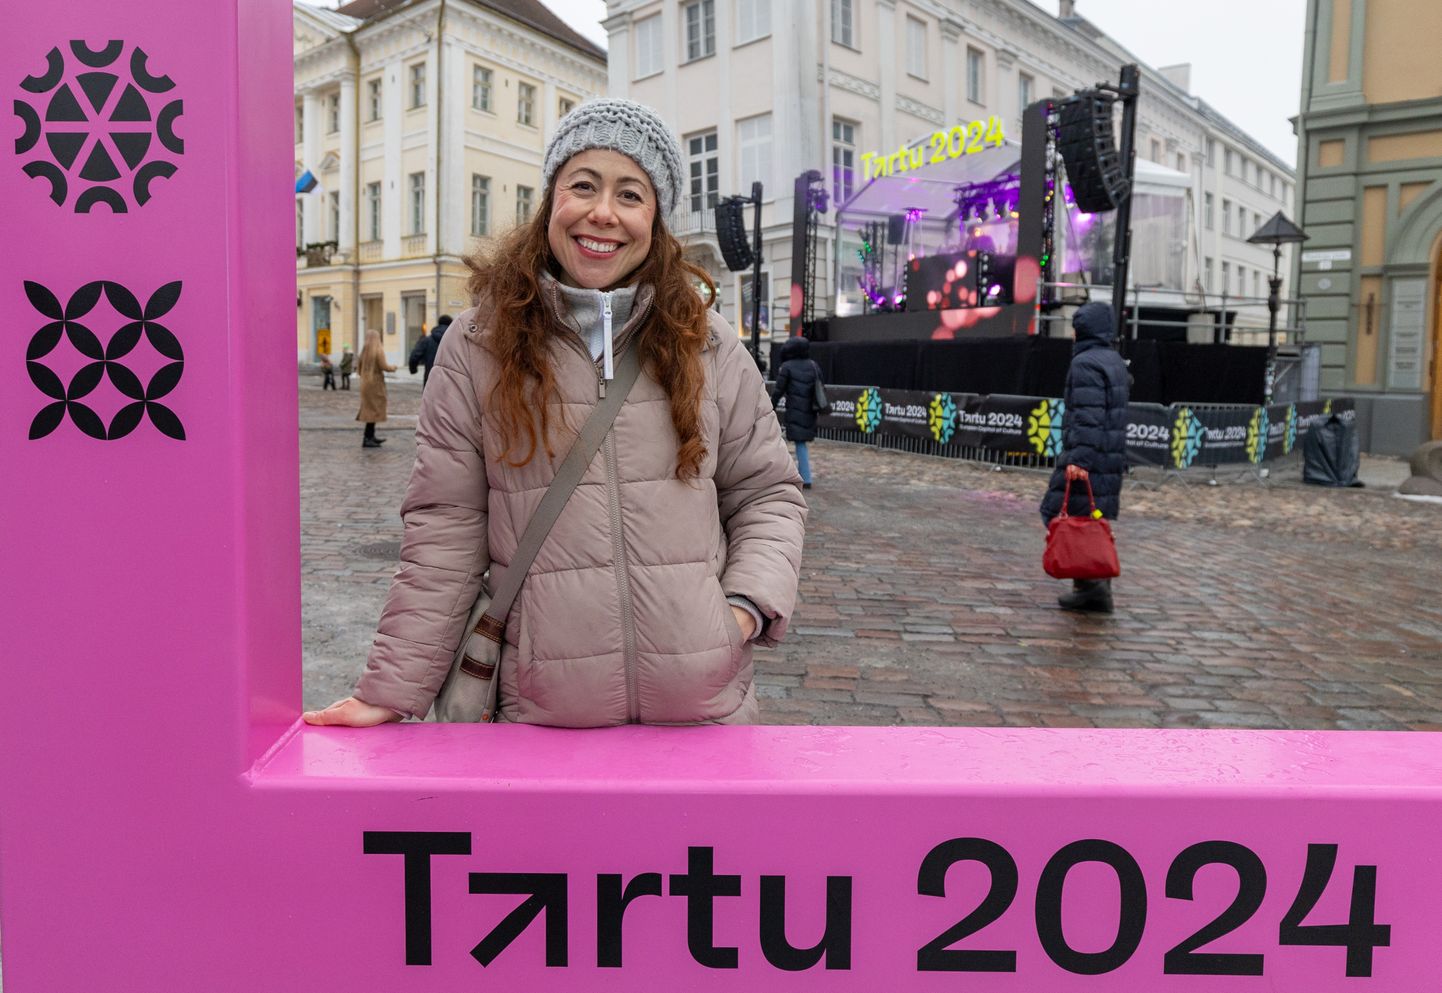 Reisiajakirja Wanderlust ajakirjanik Emma Thomson nautimas kultuuriaasta avamiseelset soojenduspidu Tartu raekoja platsil.